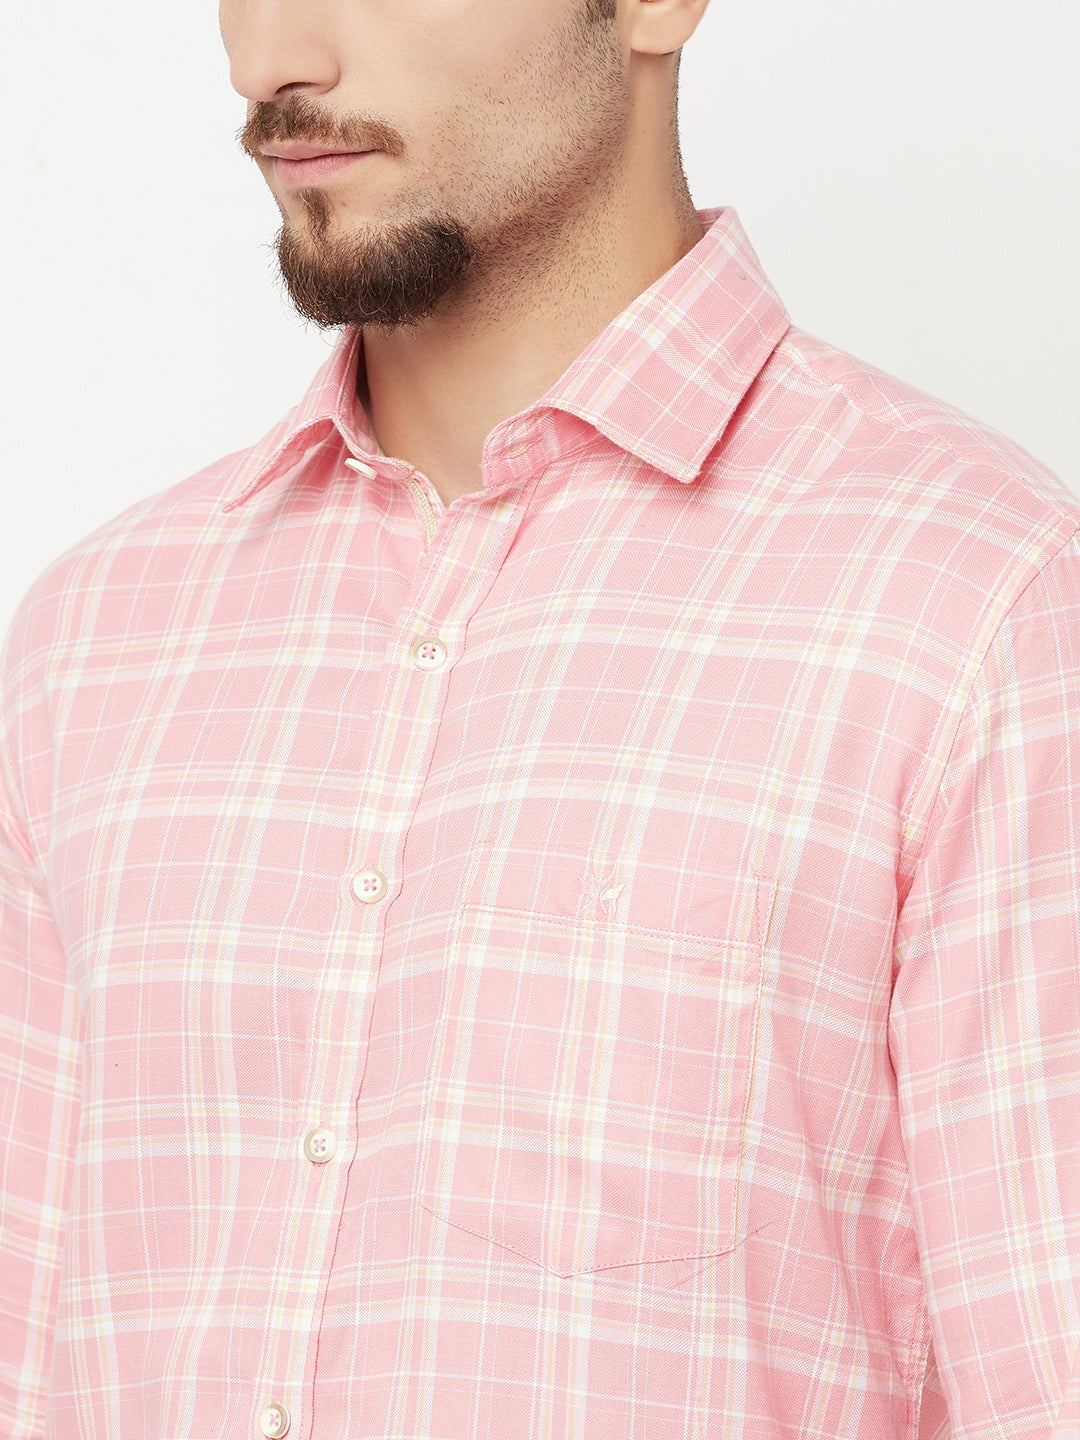 Pink Checked Casual Shirt - Men Shirts